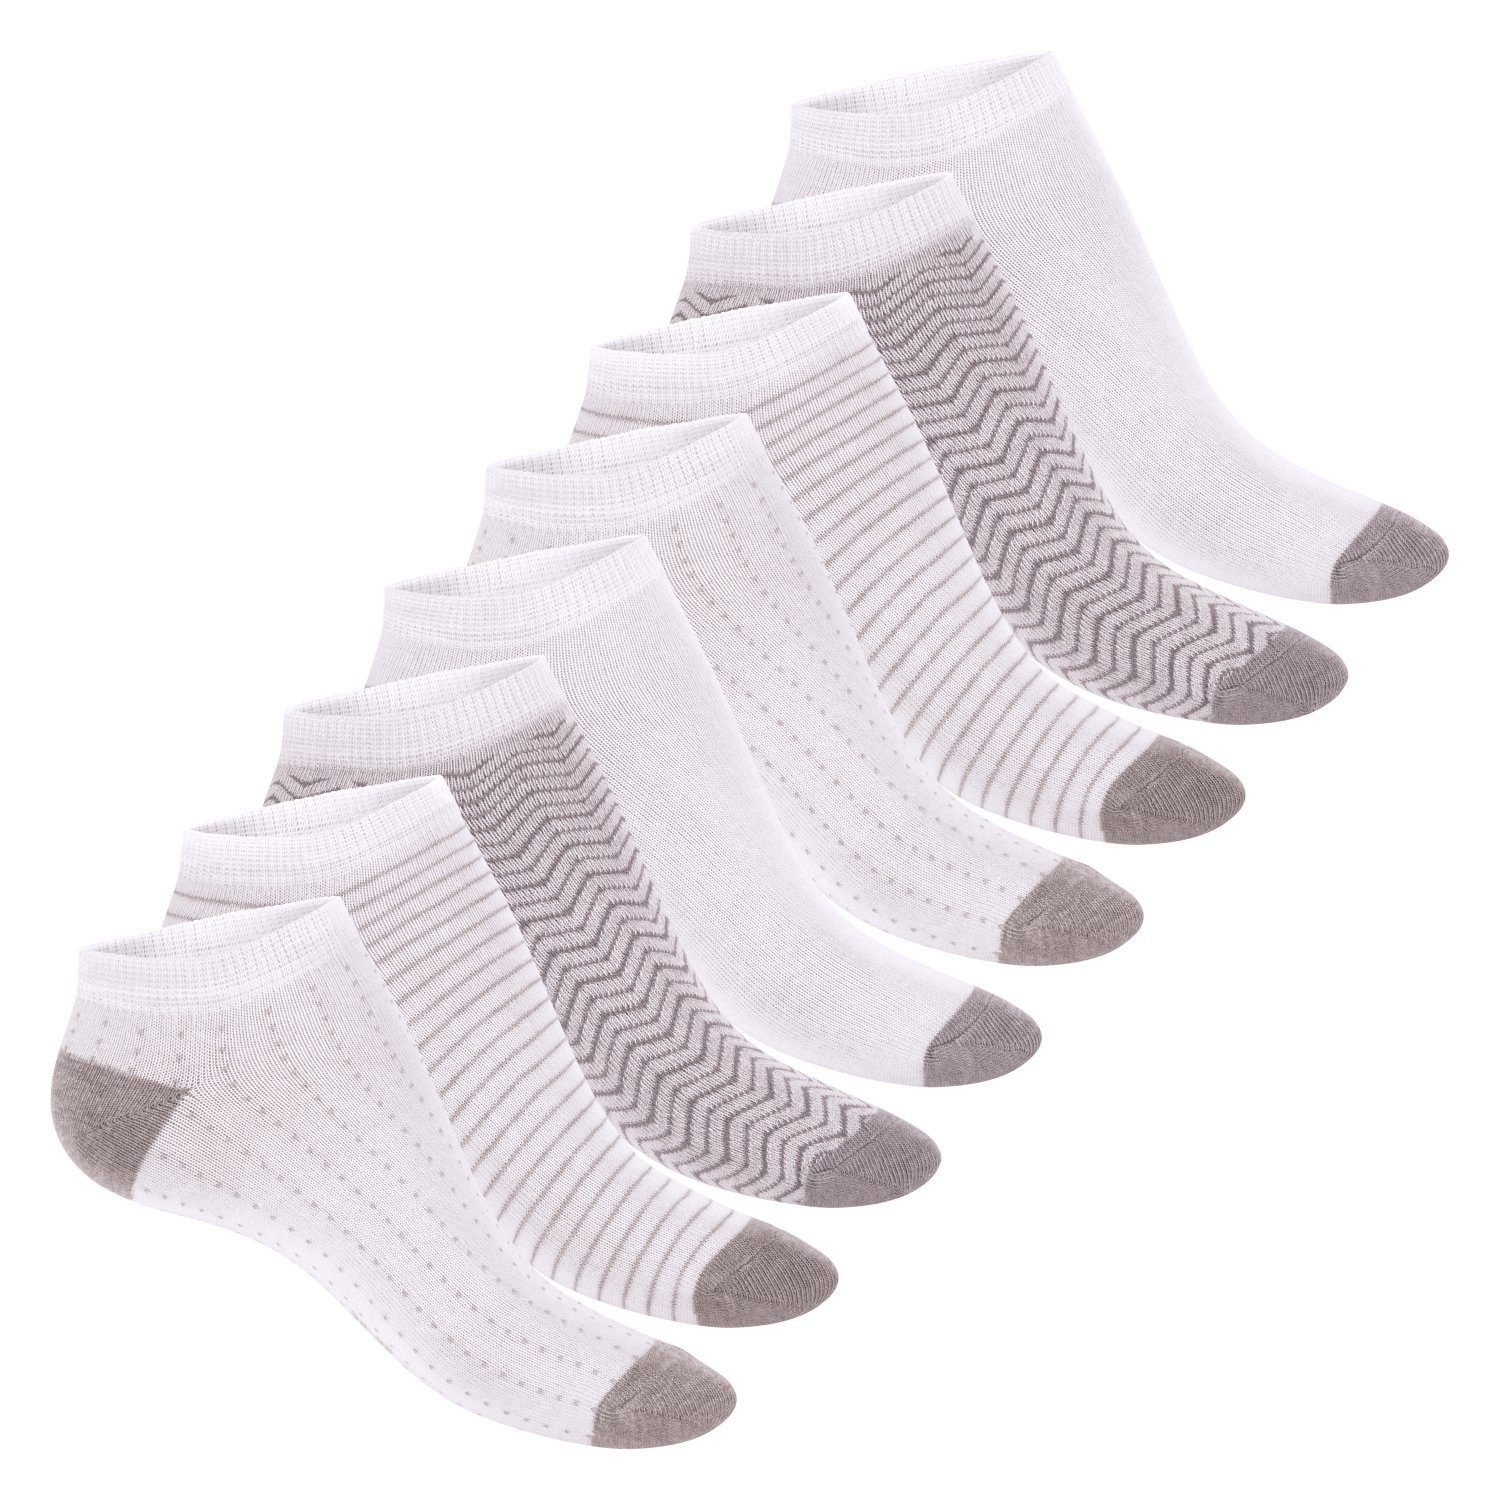 Damen mit (8 Kurze süße Sneaker Söckchen Melange Sneakersocken Footstar Grey Muster Paar) Socken